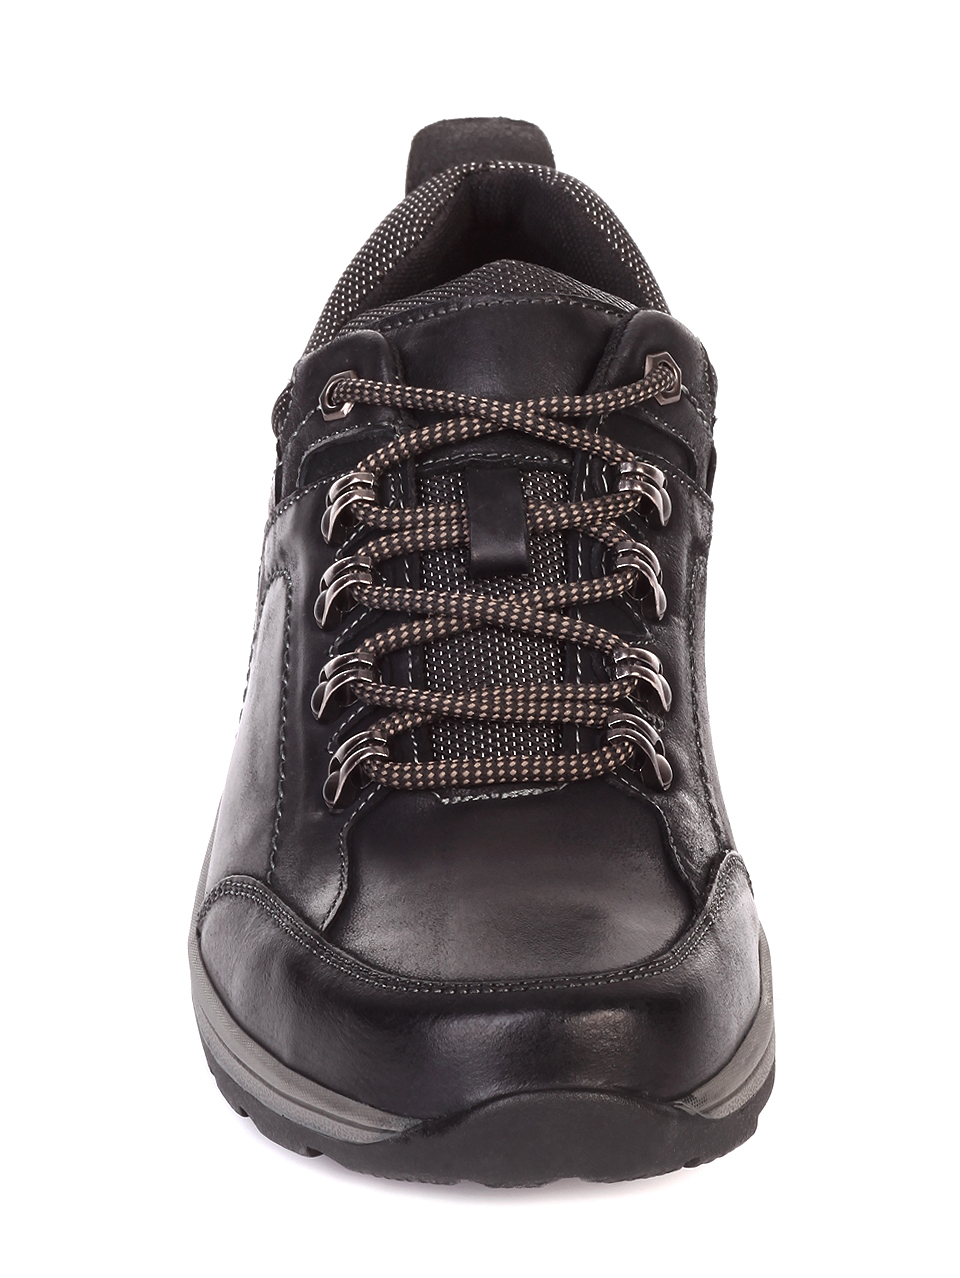 Ежедневни мъжки обувки от естествена кожа 7N-19771 black